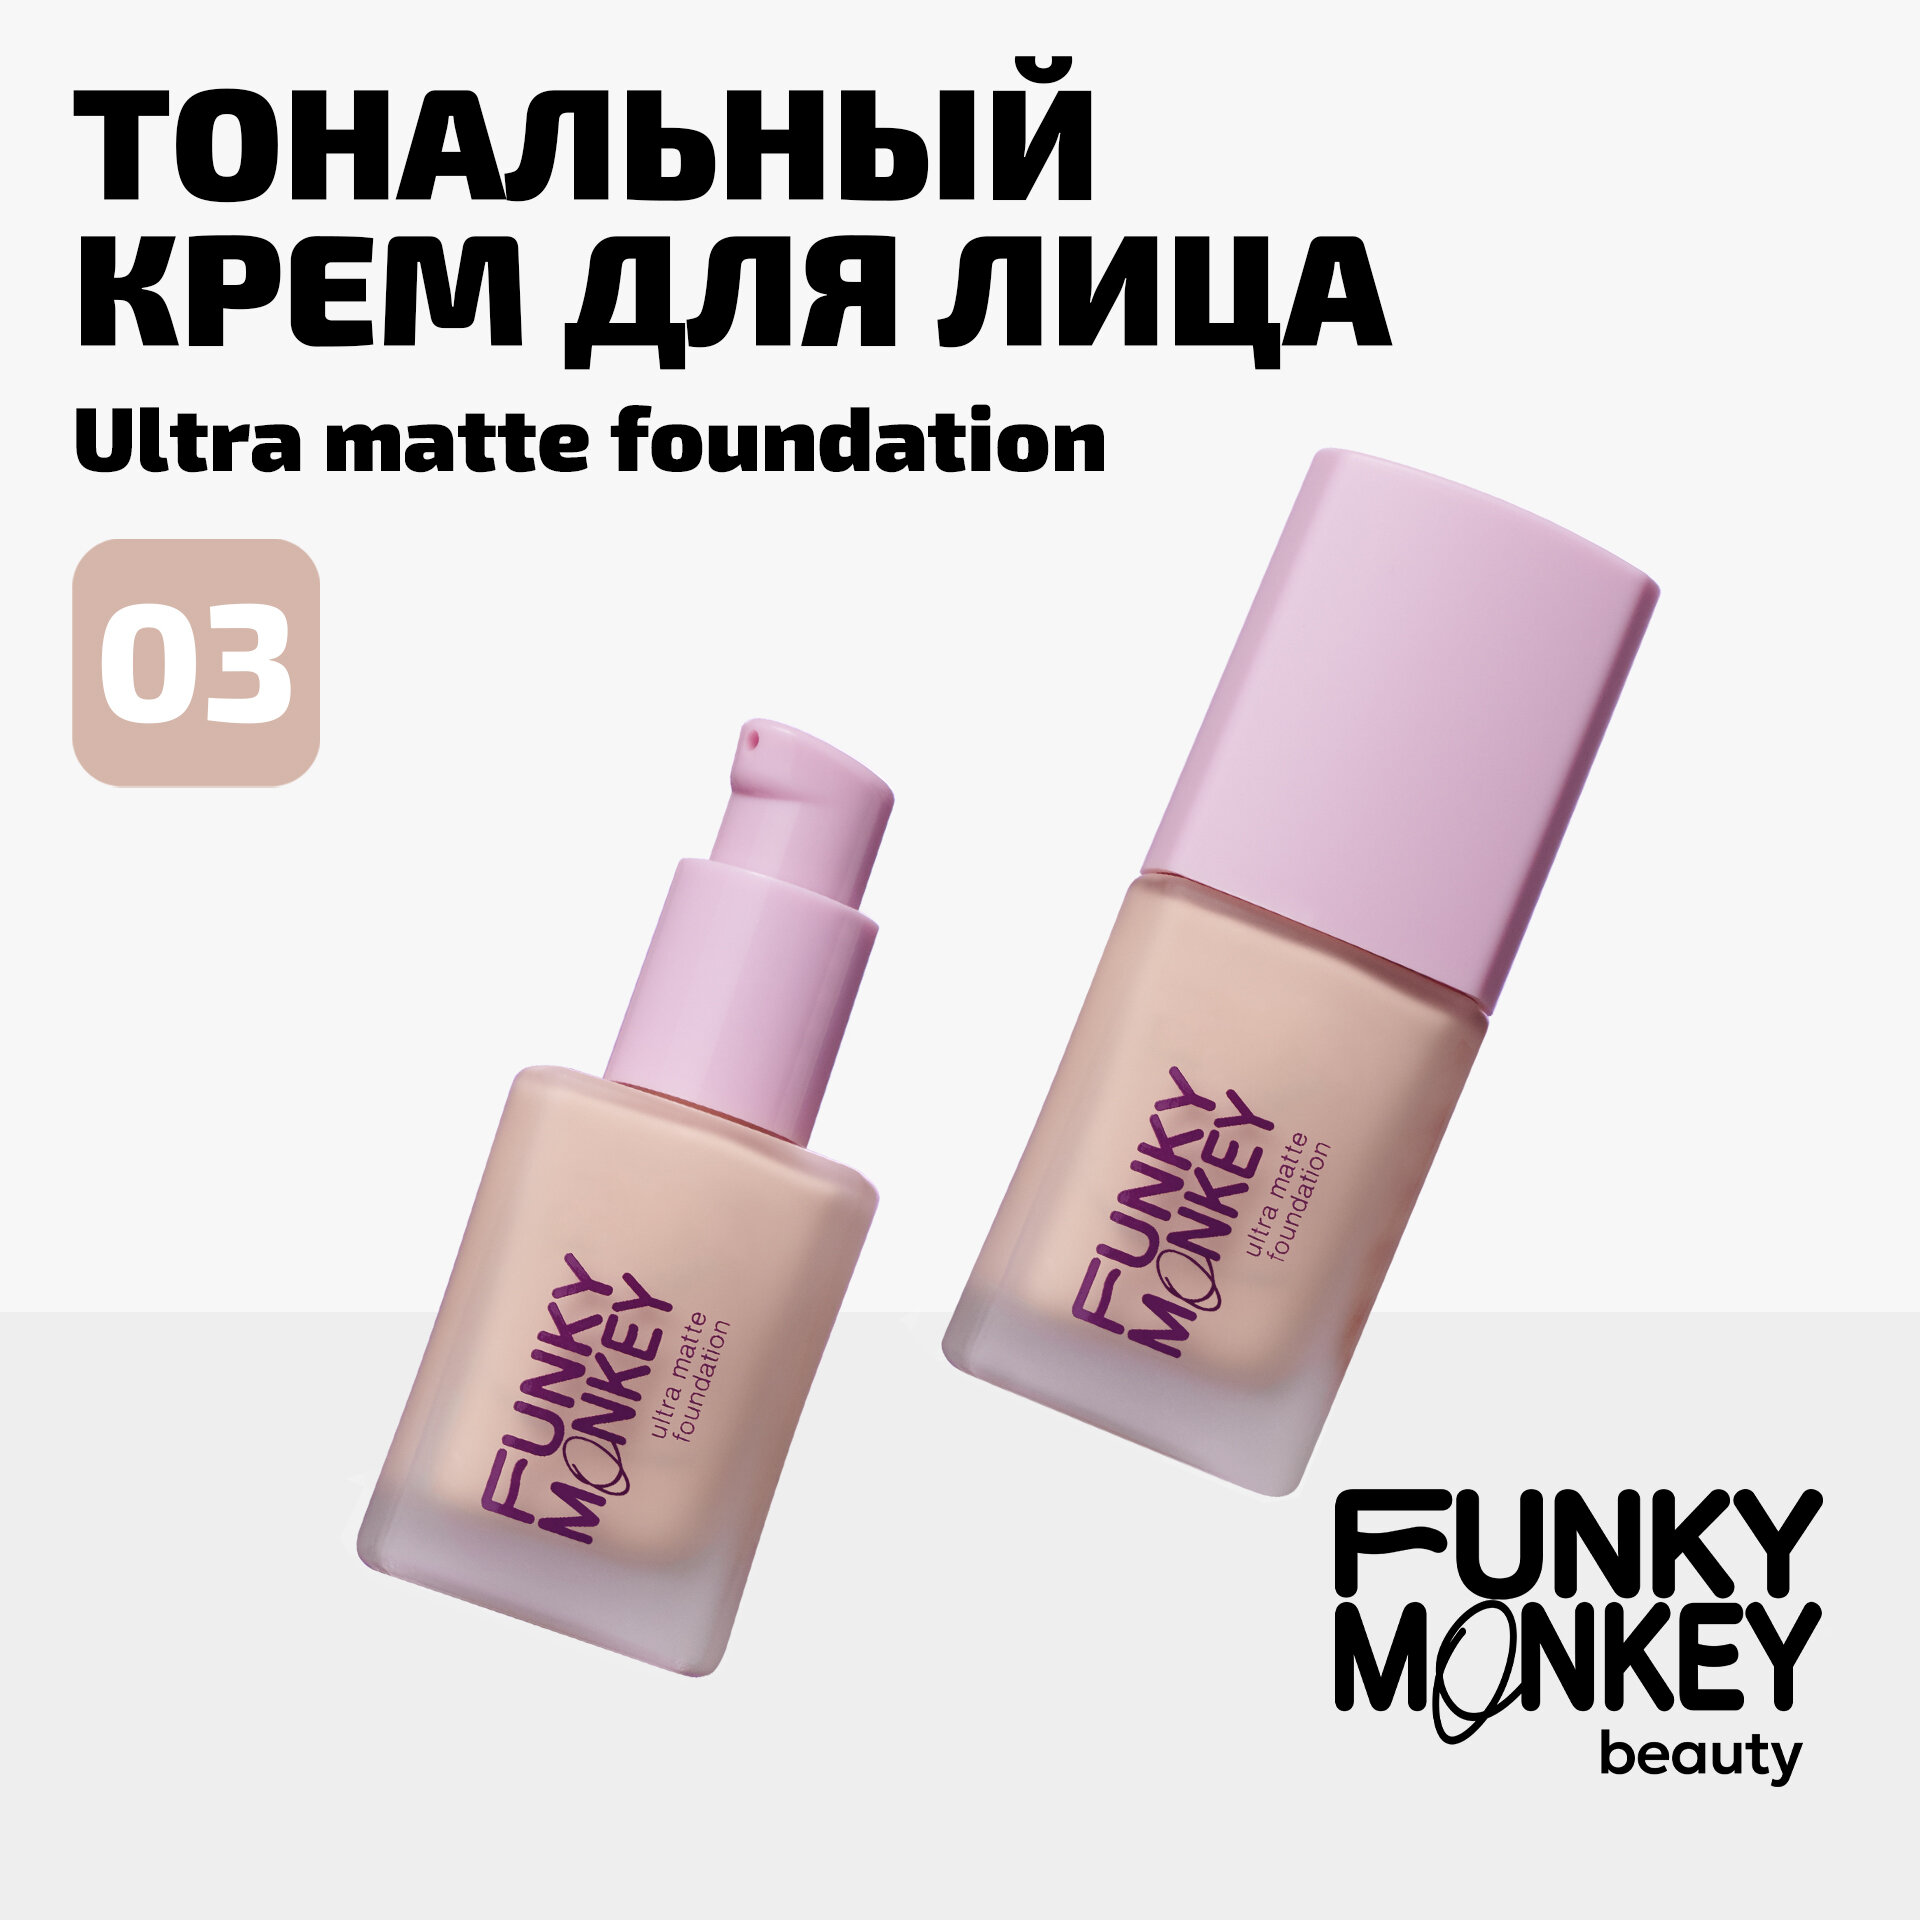 Funky Monkey Тональный крем для лица матирующий стойкий Ultra matte foundation тон 03